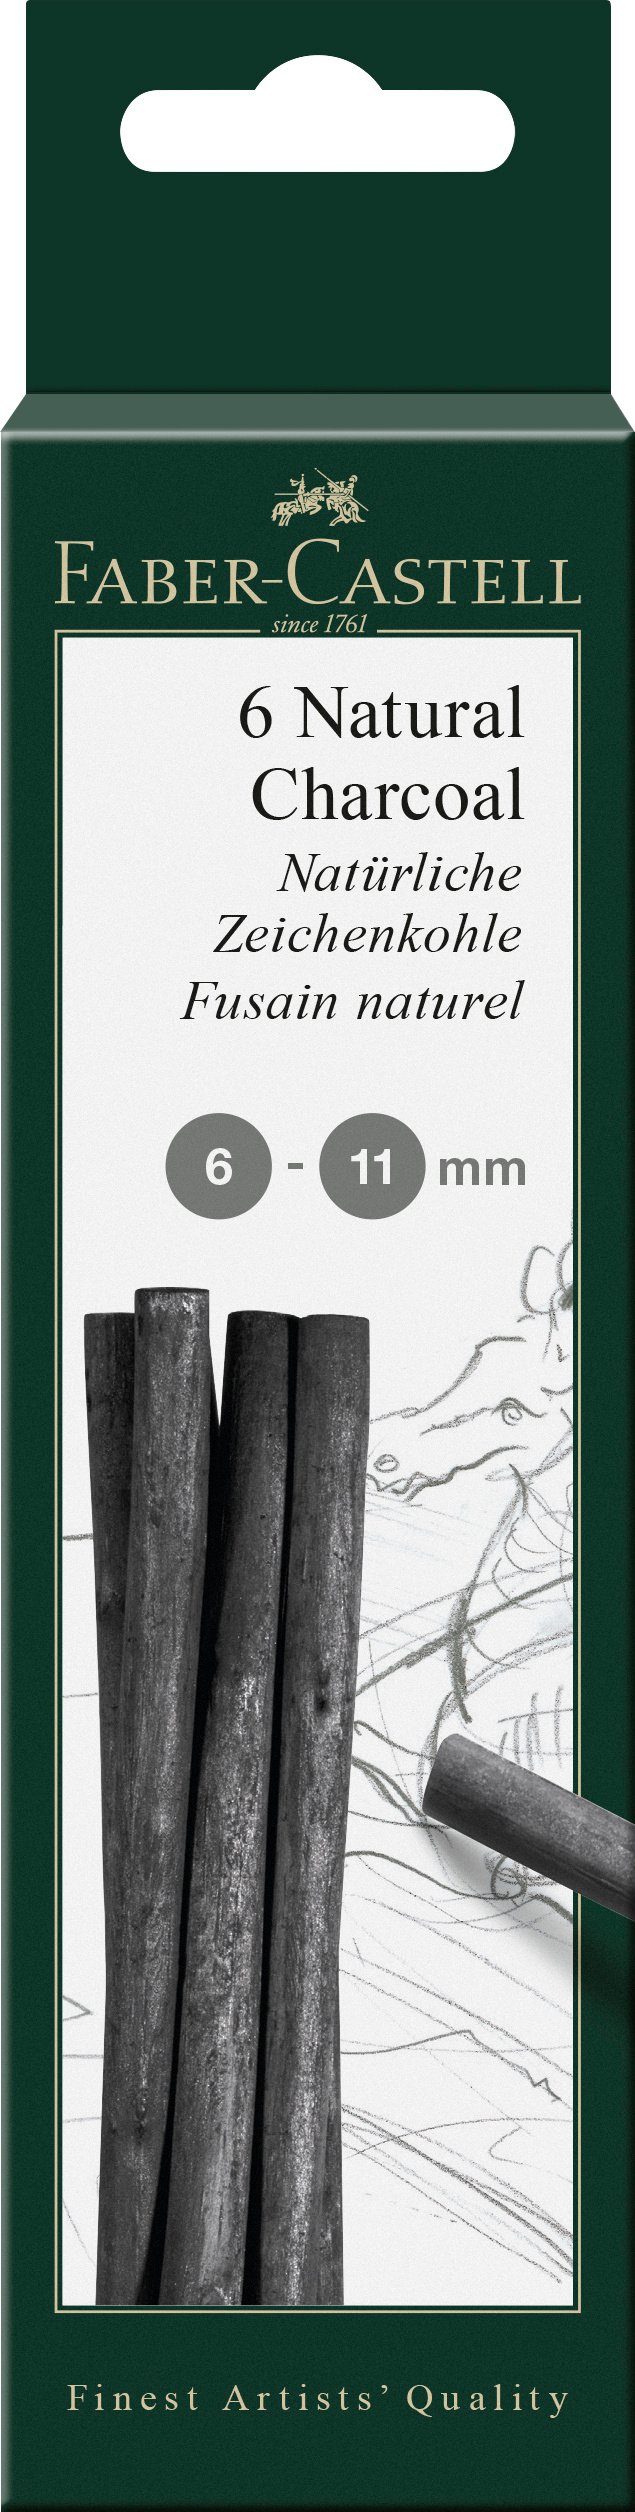 Faber-Castell Zeichenkohle Zeichenkohle PITT natürlich, 6-11mm